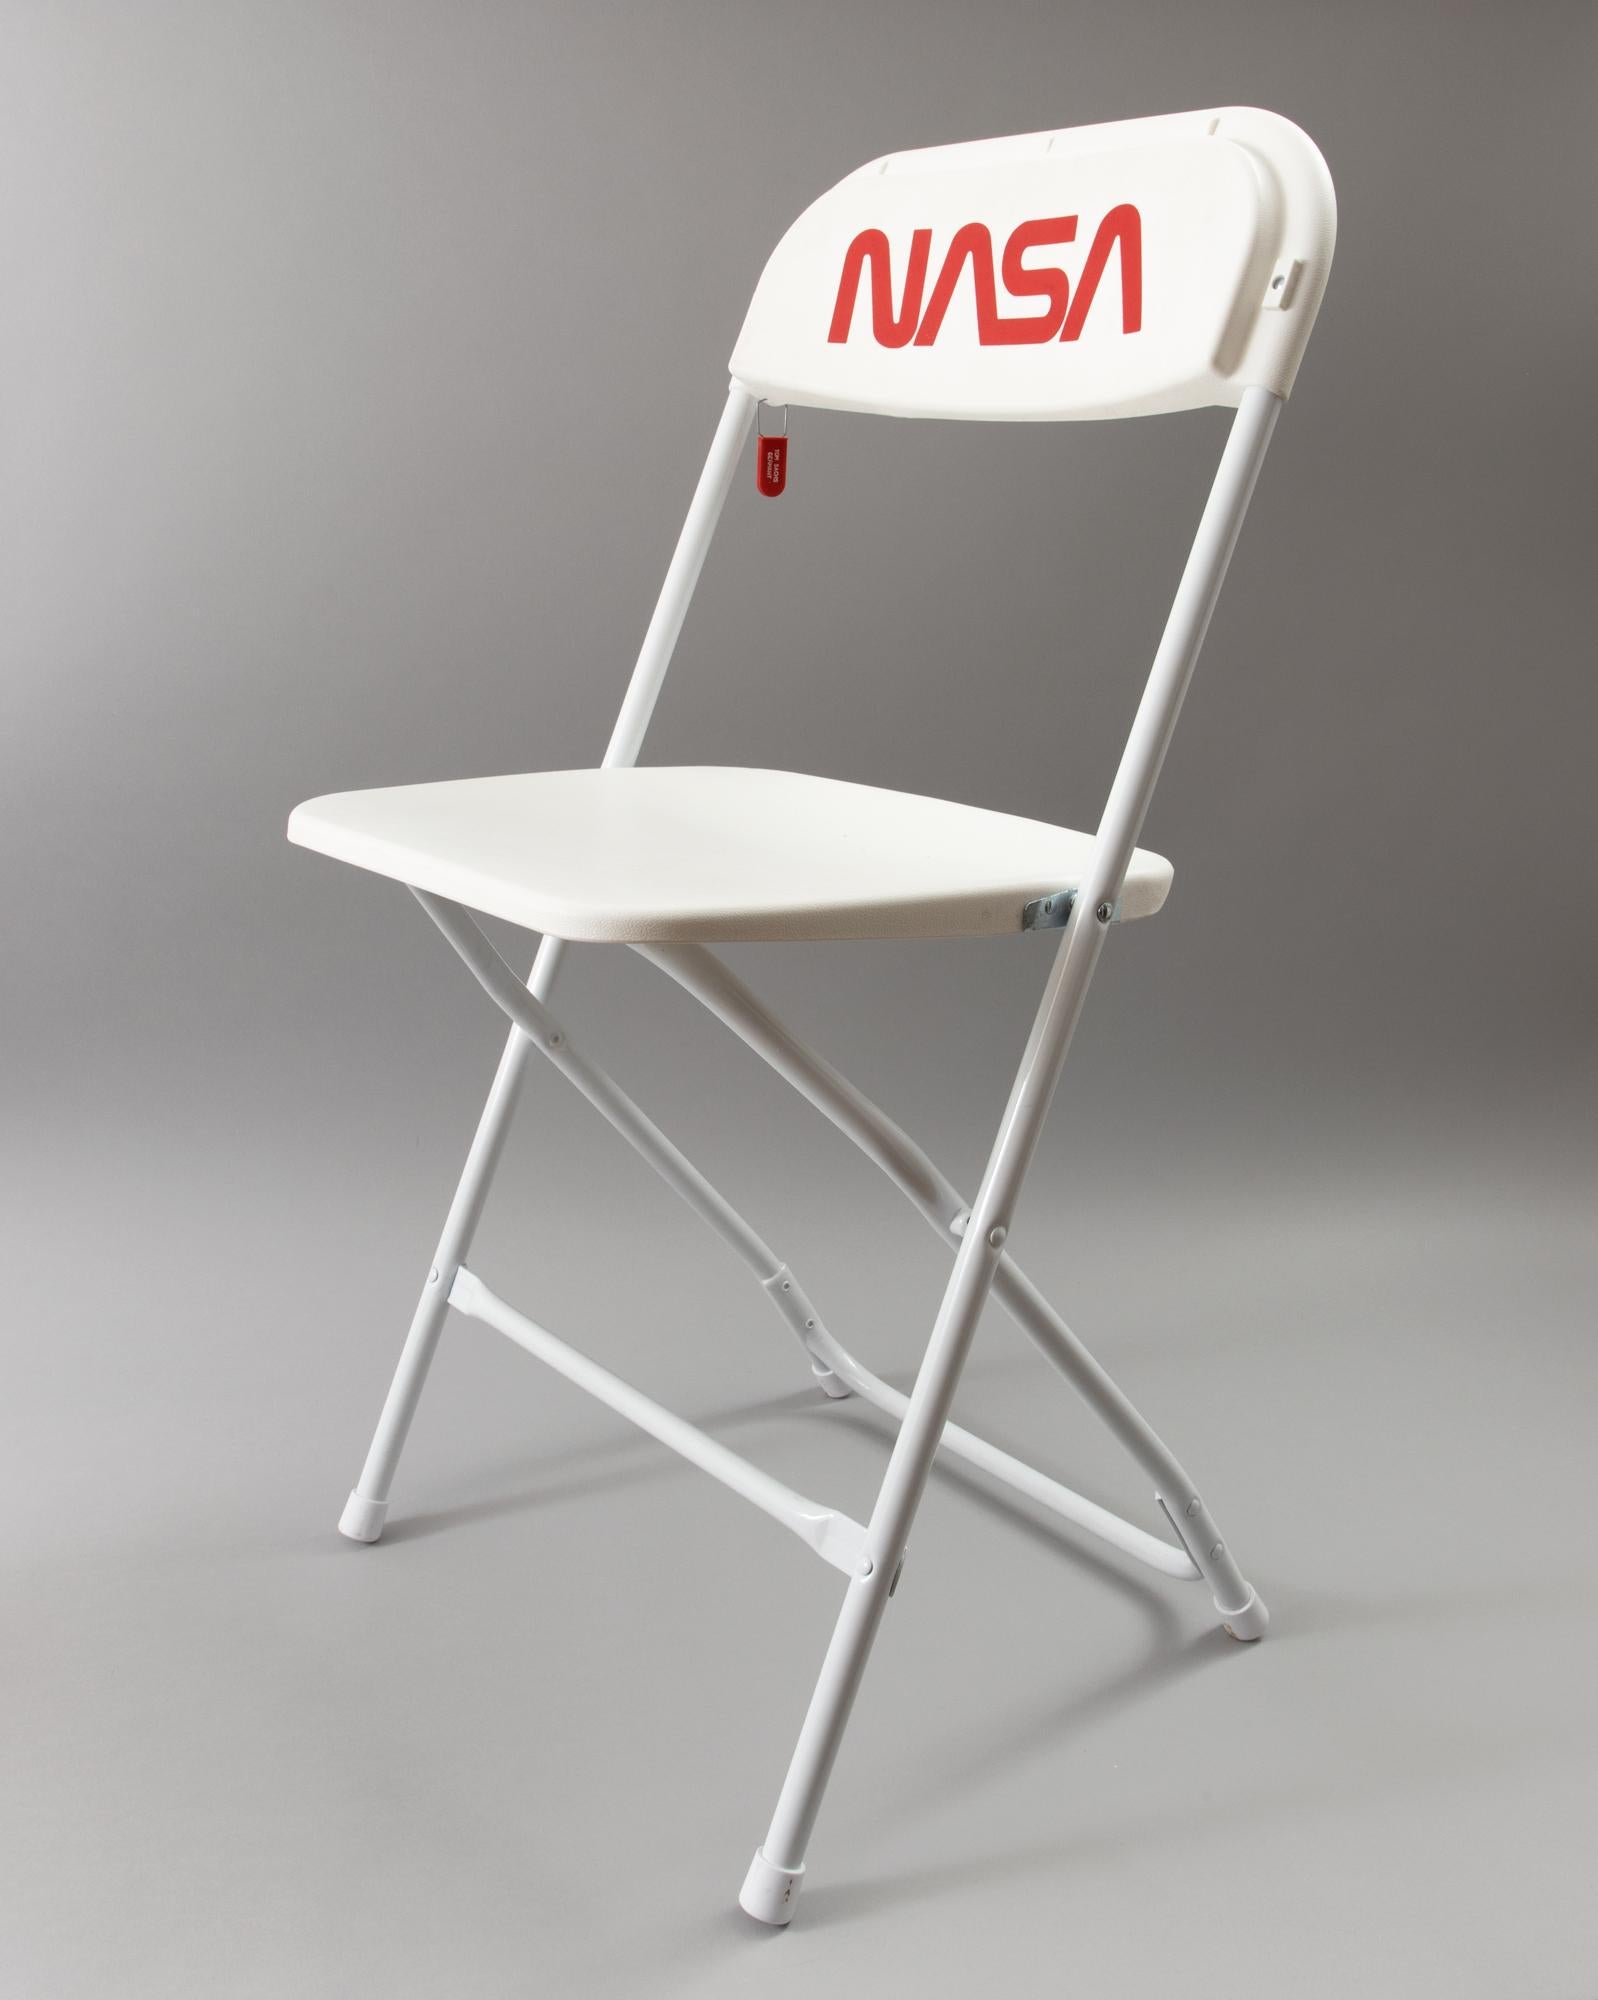 Abstract Sculpture Tom Sachs - Chaise de la NASA ( Programe spatiale : Rare Earths), Art contemporain, signée et intitulée